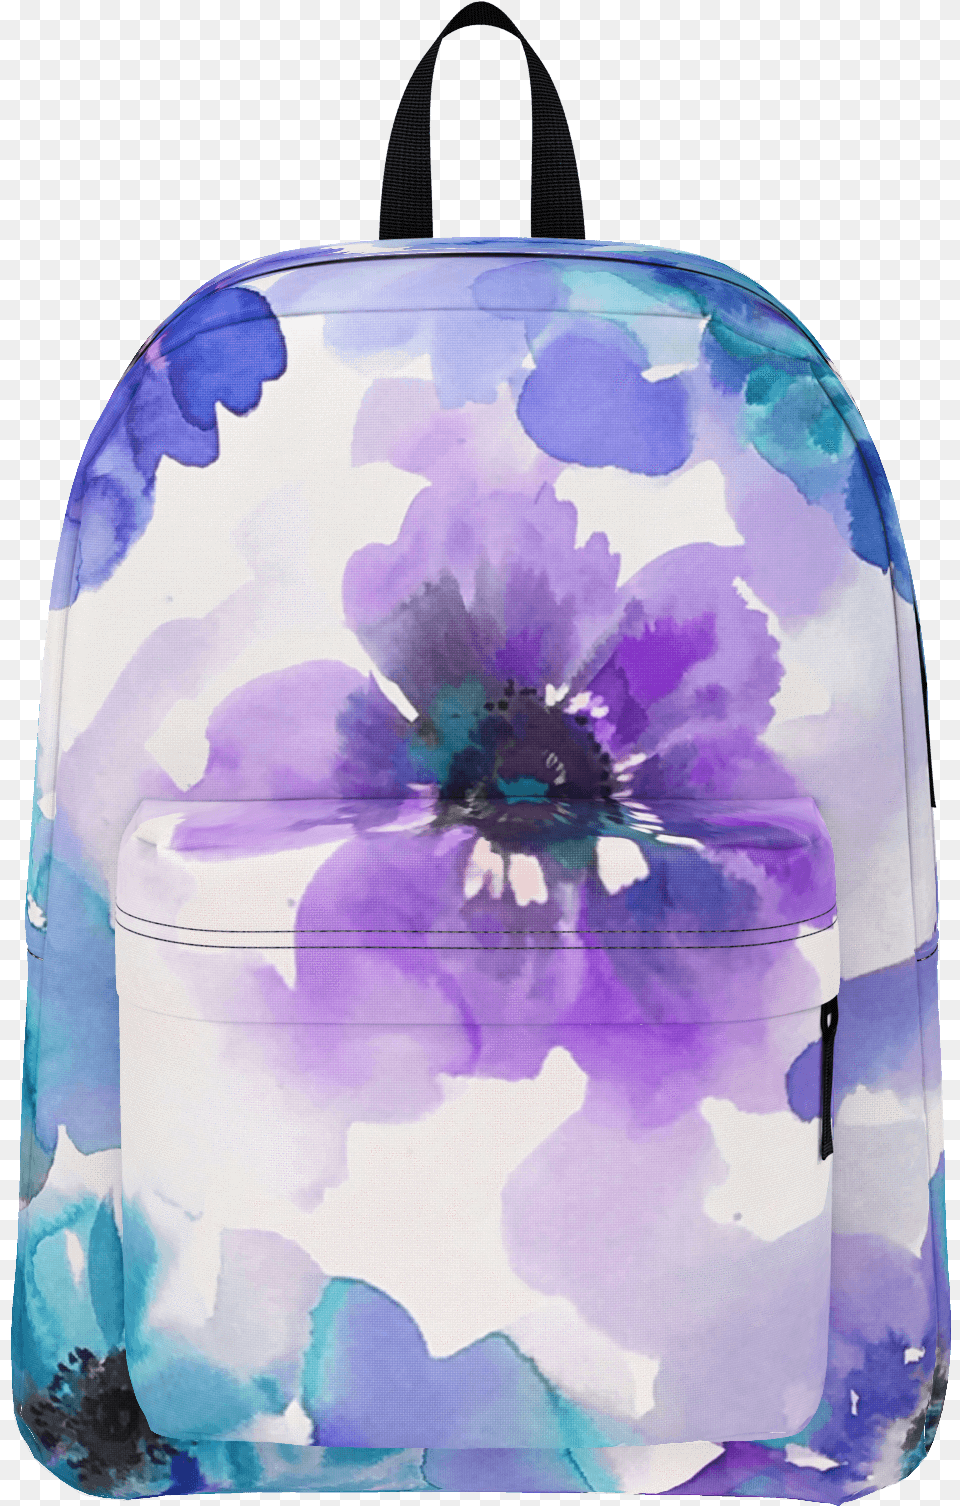 Blue U0026 Purple Watercolor Anemones Backpack U2013 The Tweenage Garment Bag, Adult, Bride, Female, Person Free Png